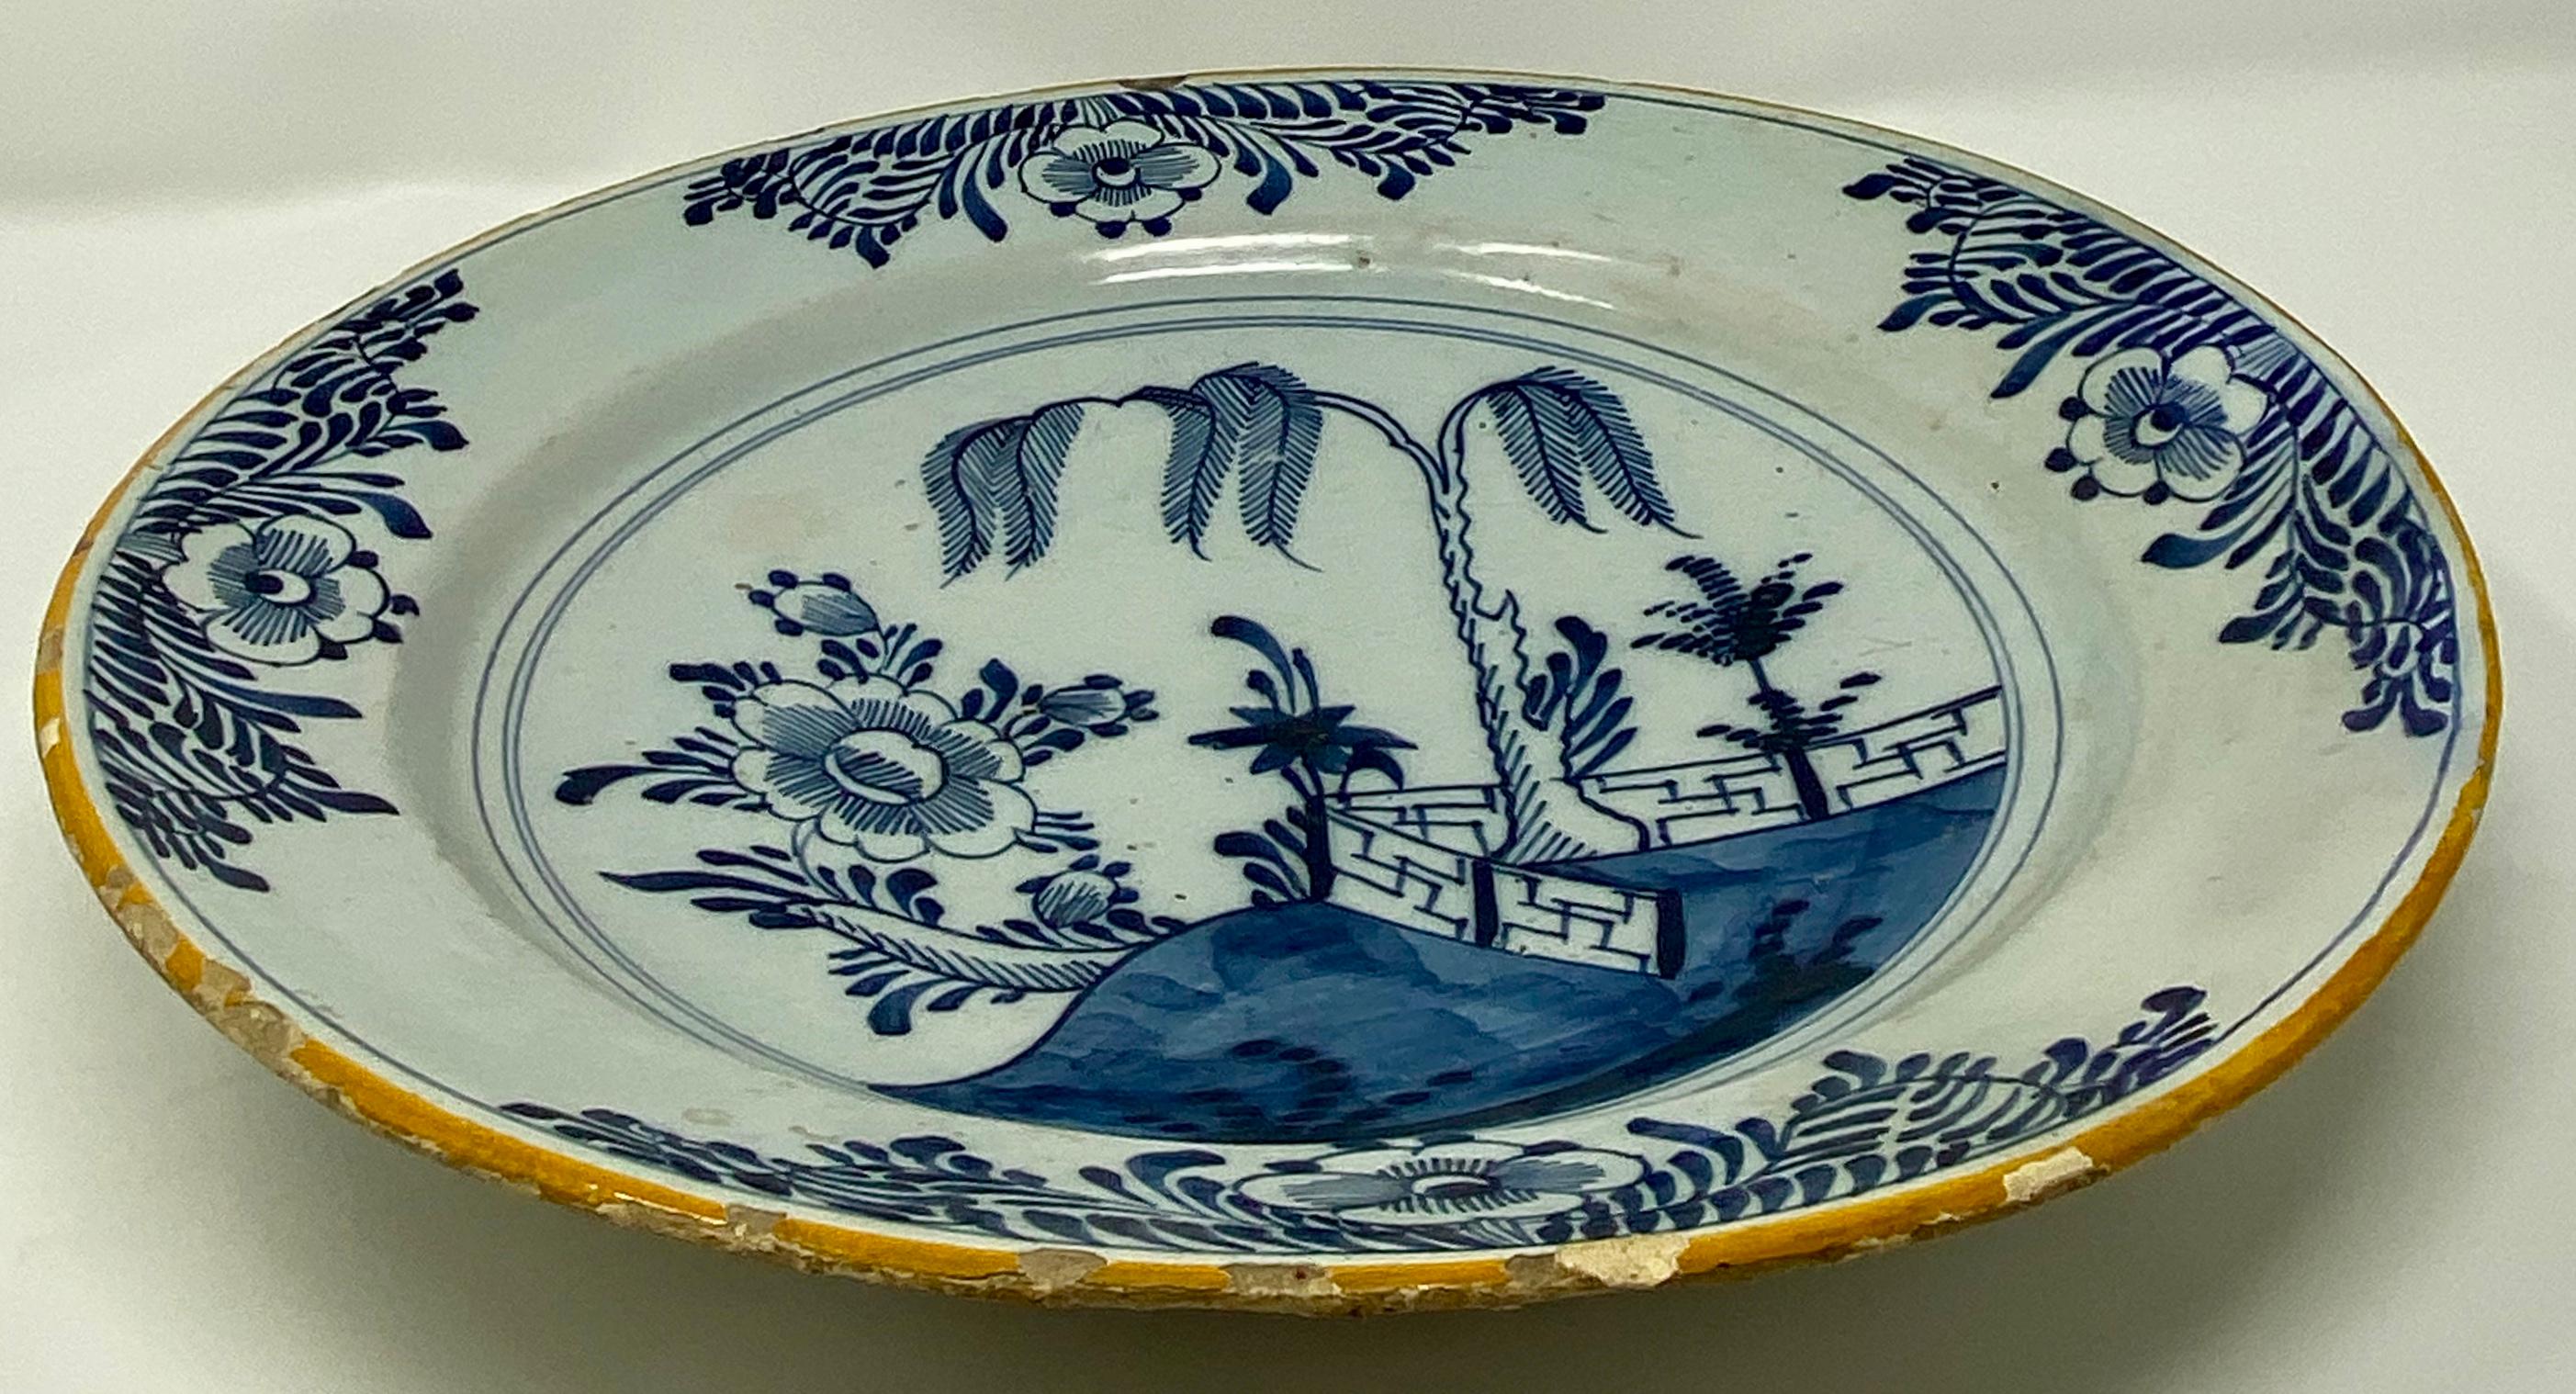 Chargeur ancien en porcelaine hollandaise à la manière chinoise, vers 1750-1780.  Il s'agit d'une pièce très ancienne et délicate. N'hésitez pas à nous interroger sur l'état de la marchandise car nous pouvons vous envoyer des photos supplémentaires